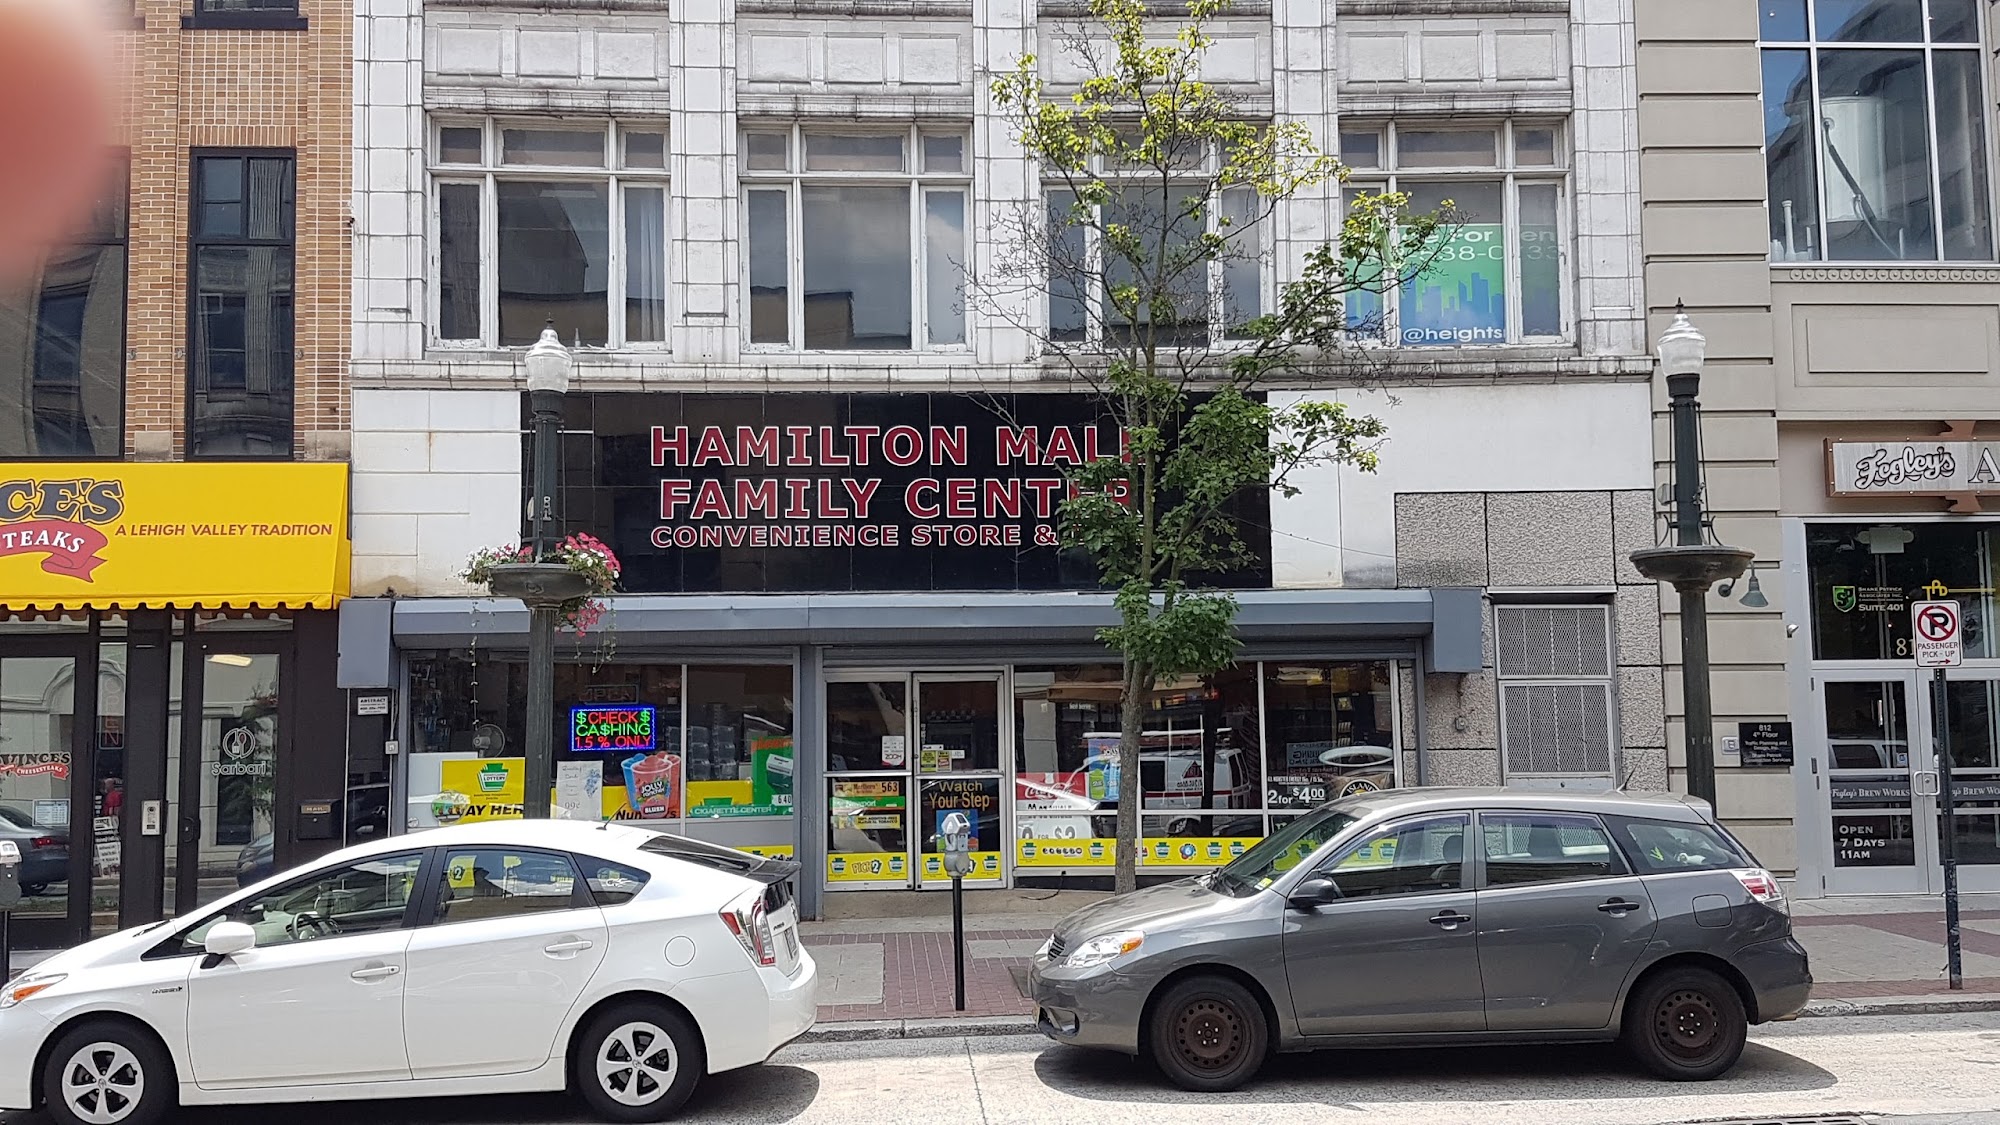 Hamilton Mall Family Center